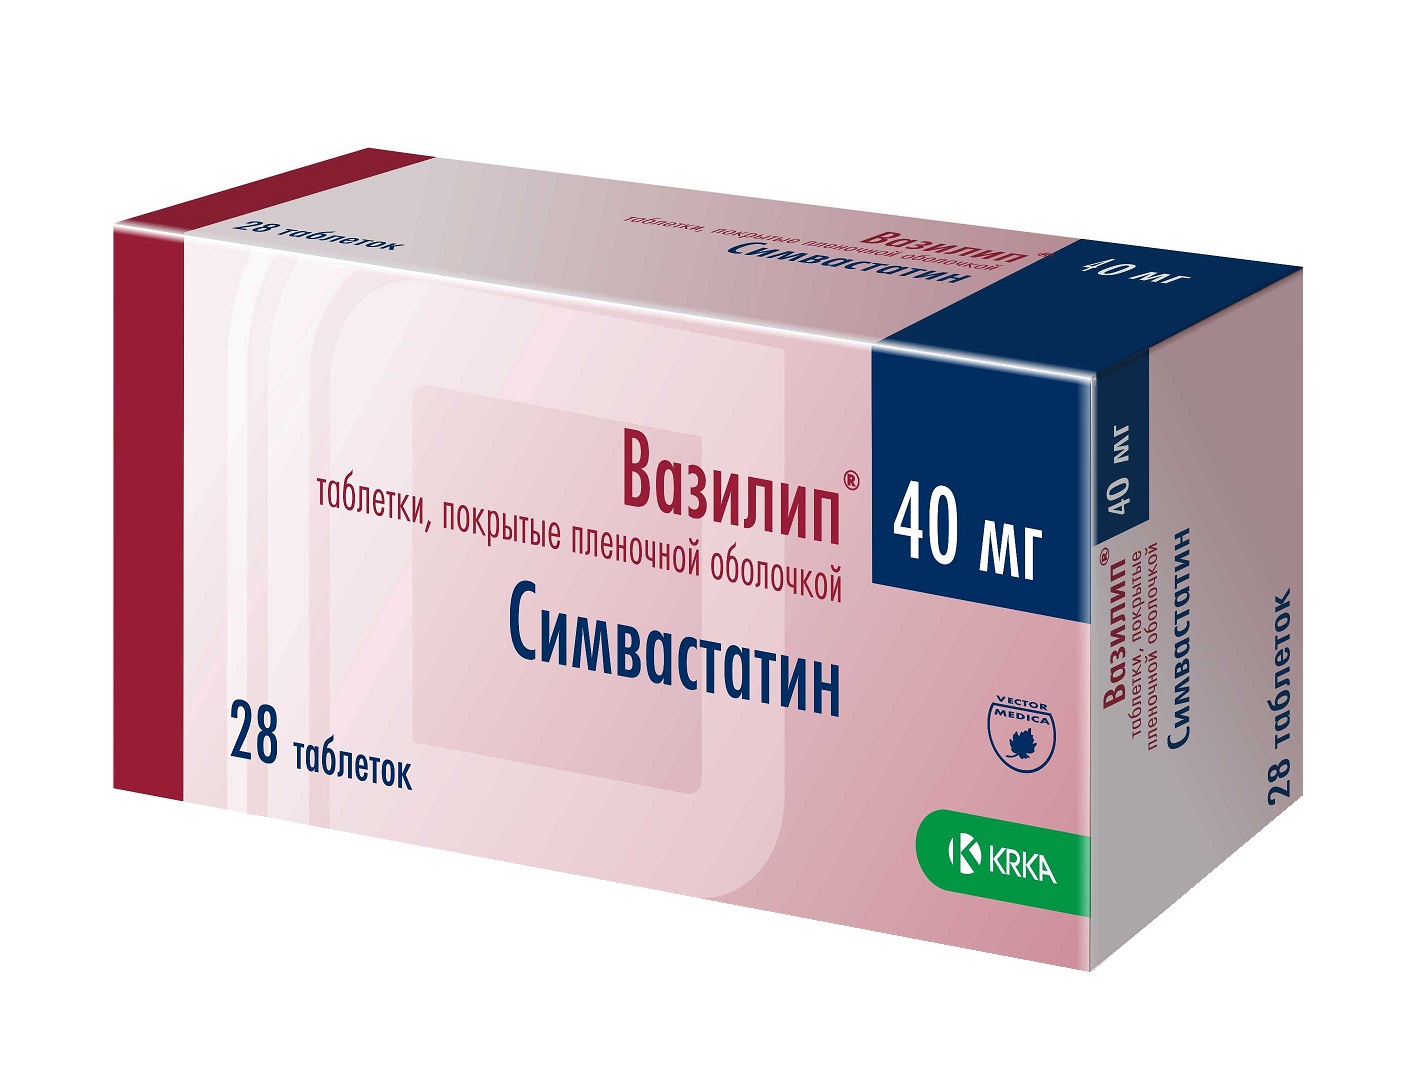 Вазилип 40 мг N28 табл цена 349 руб ,  Вазилип 40 мг N28 .